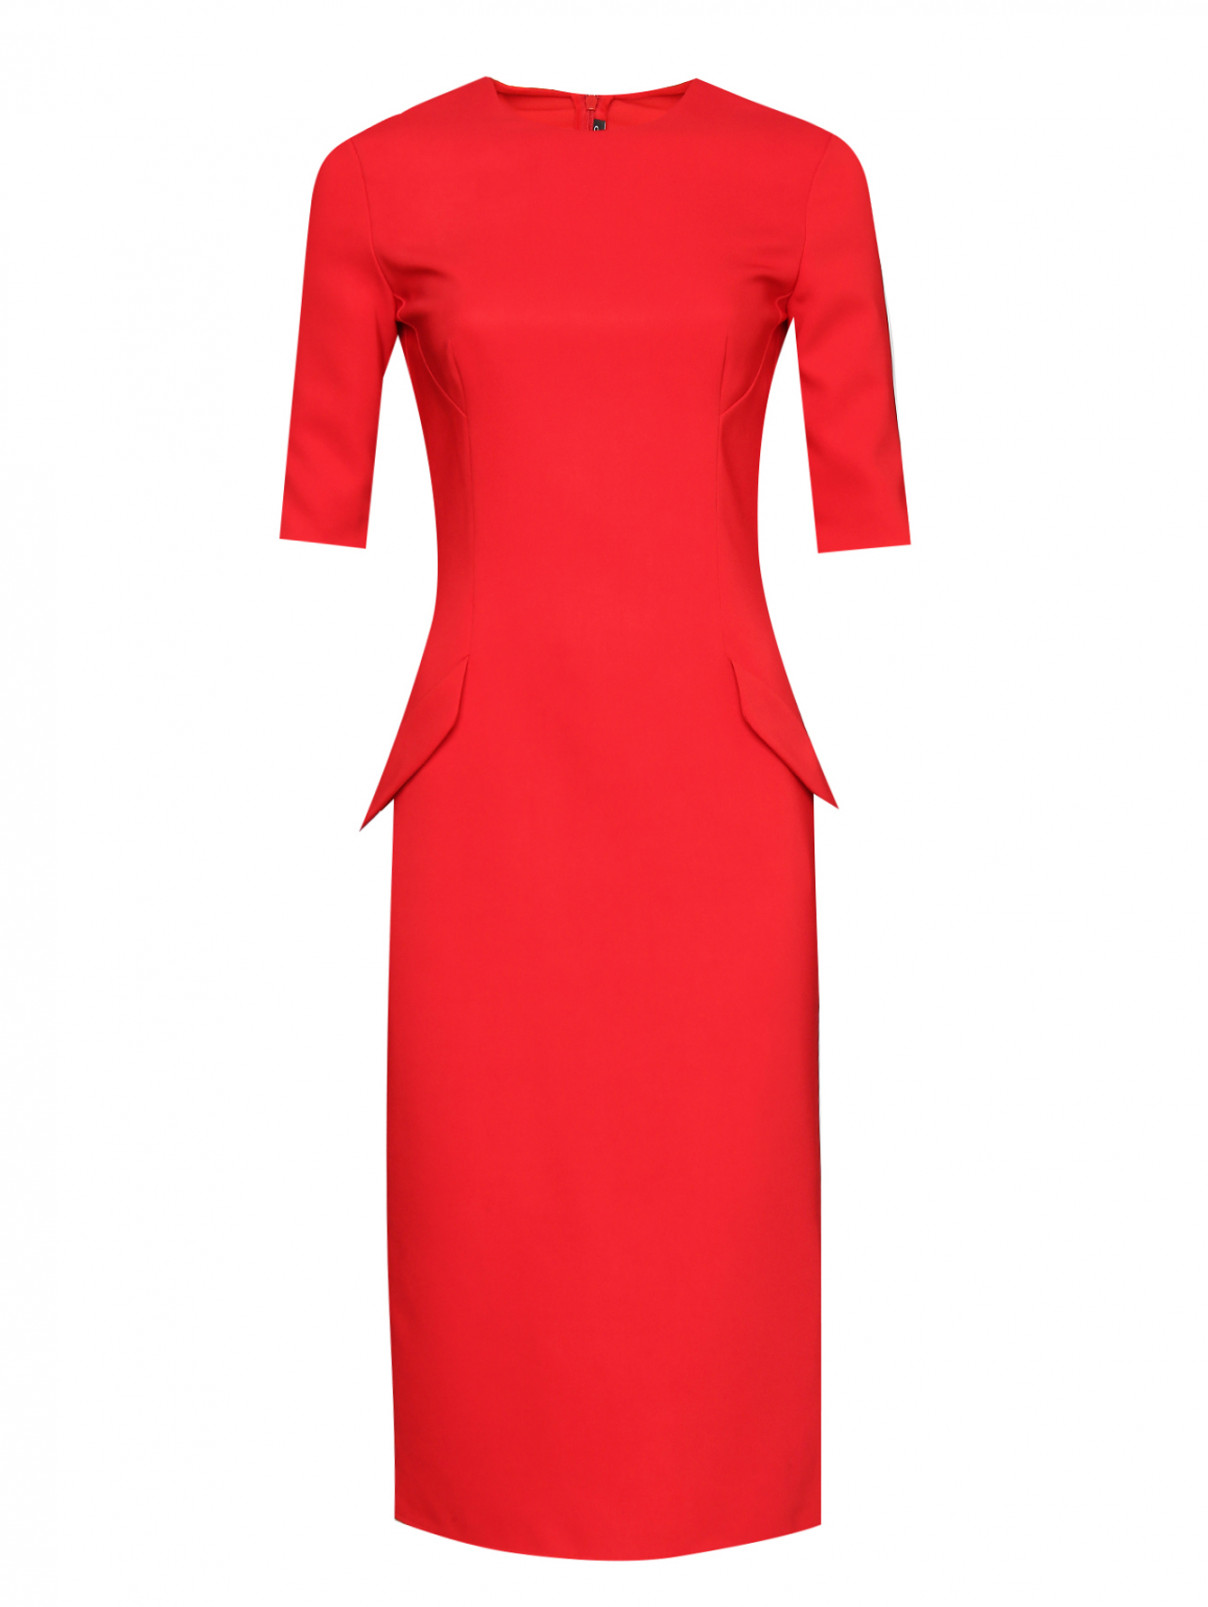 Платье-футляр с короткими рукавами Ermanno Scervino  –  Общий вид  – Цвет:  Красный